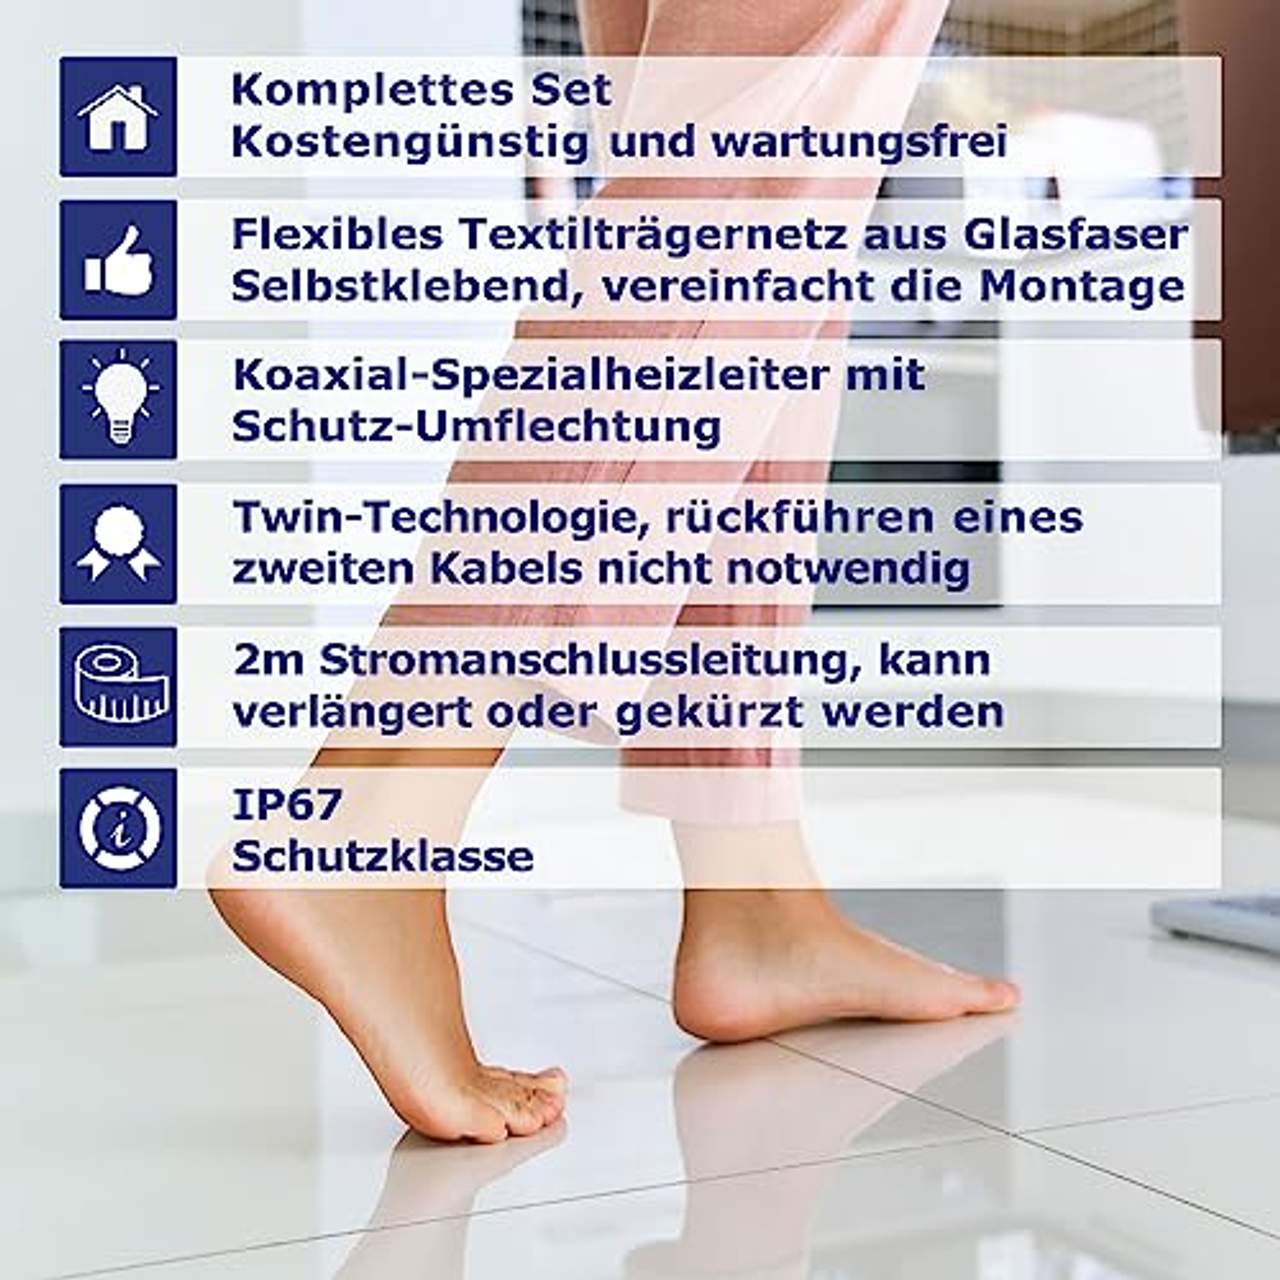 VILSTEIN© Elektrische Fußbodenheizung Elektro Fußboden-Heizmatte 150W